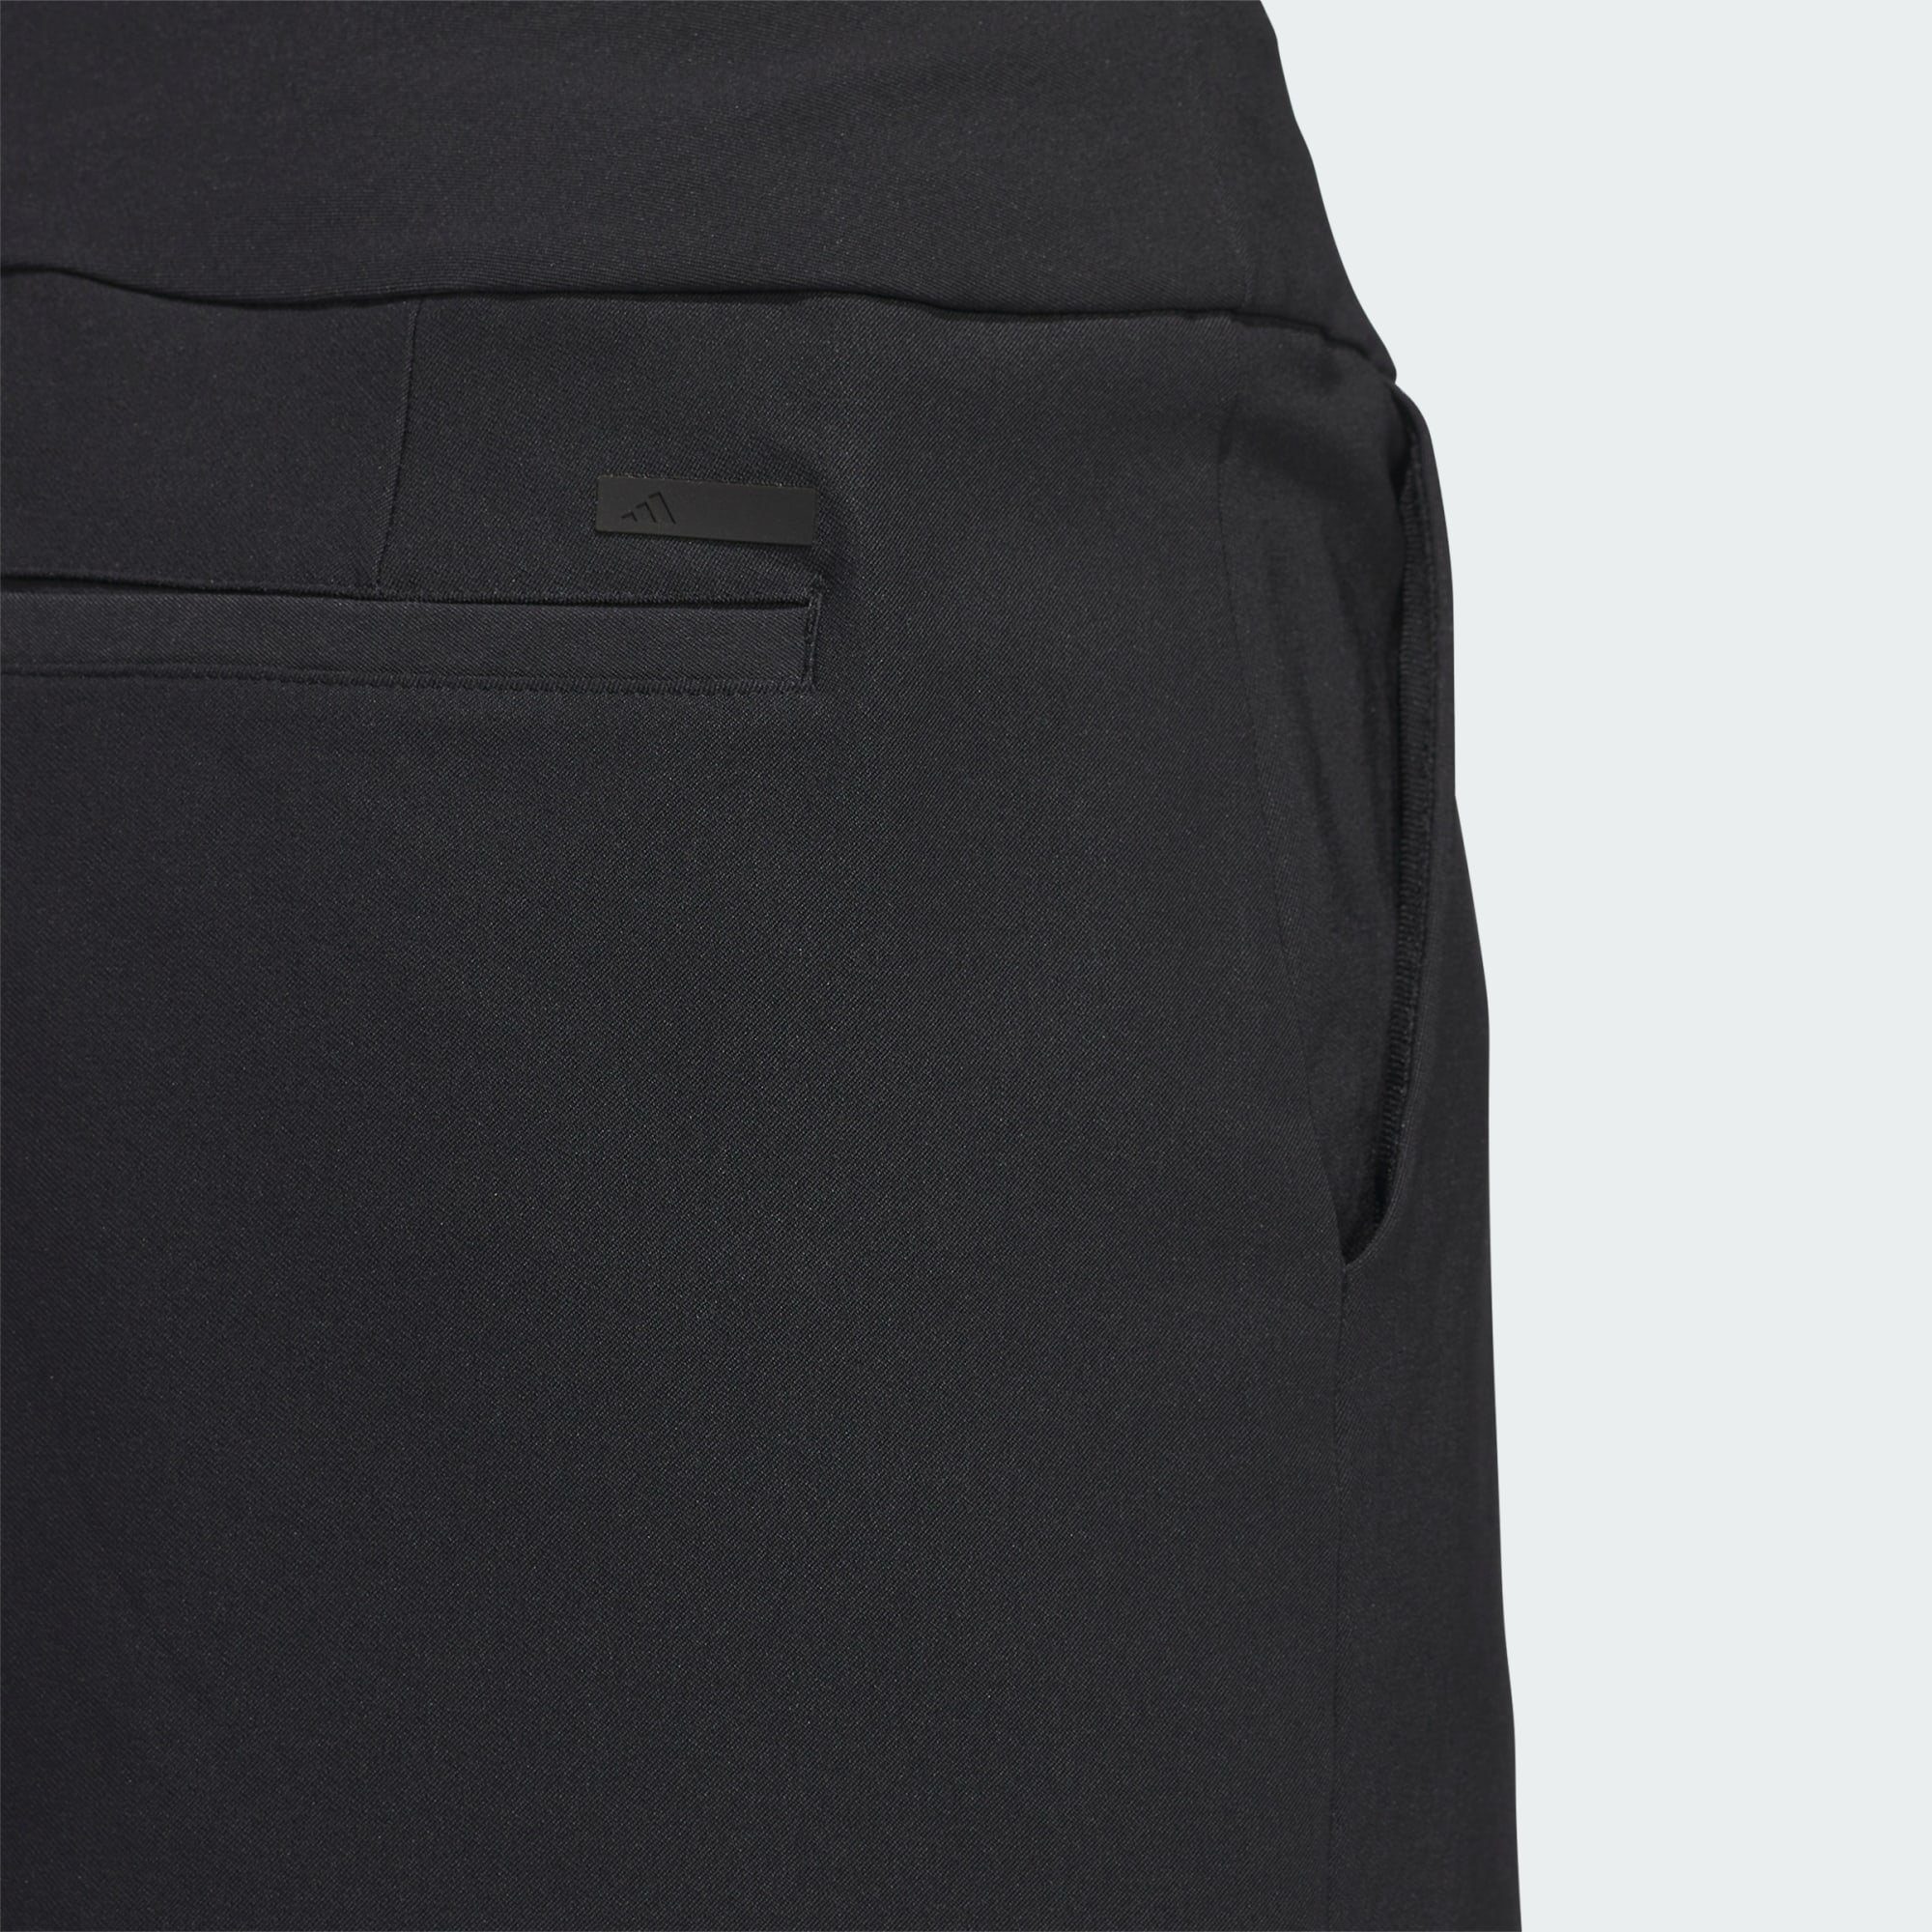 ULTIMATE365 Minirock Black Performance adidas SOLID SKORT